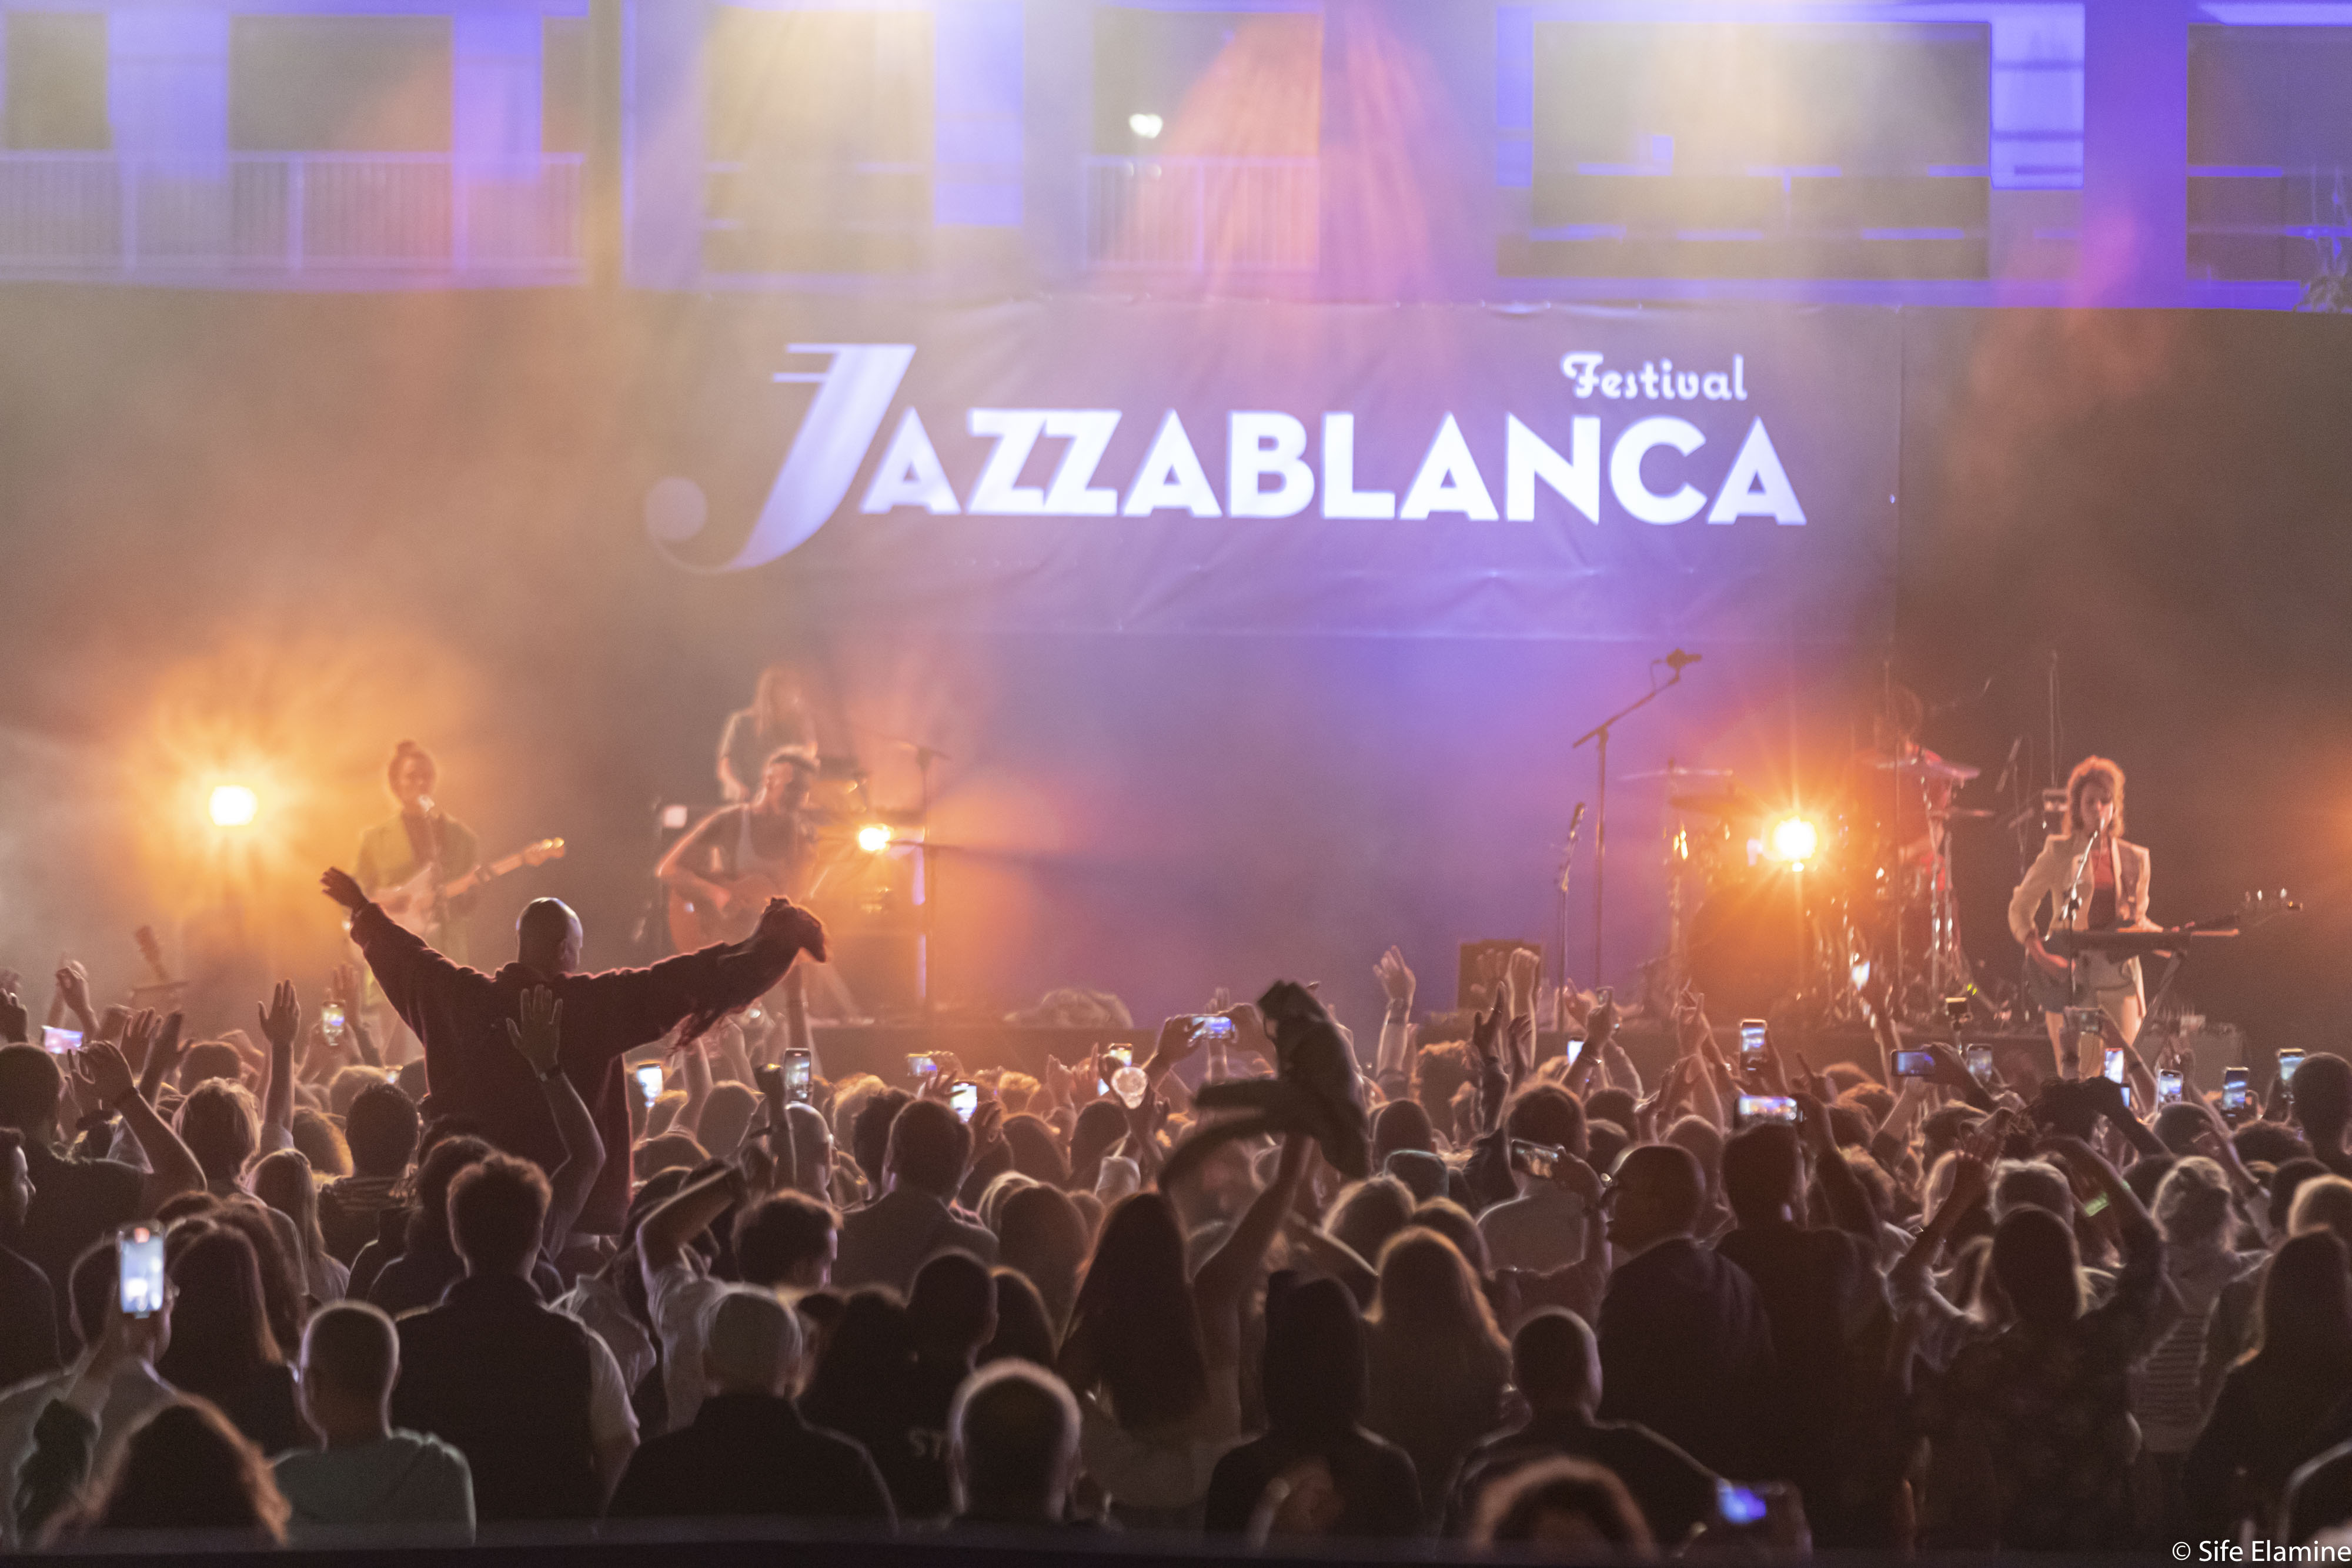 الشركة العامة بالمغرب تحتفل بالفن والموسيقى في مهرجان  "Jazzablanca"